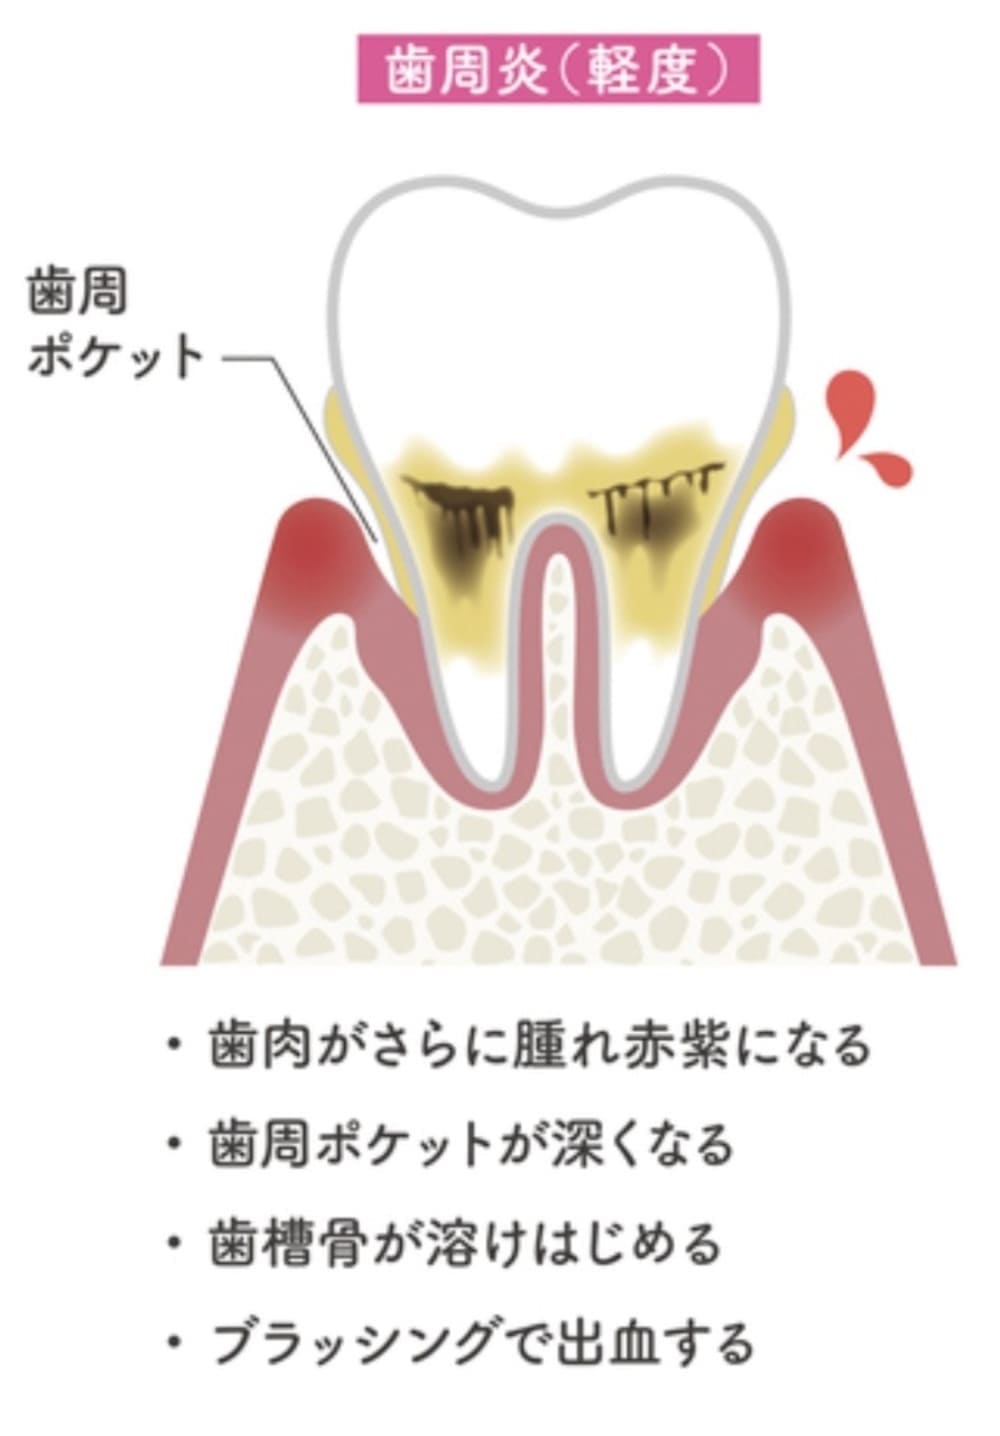 軽度の歯周病の解説画像